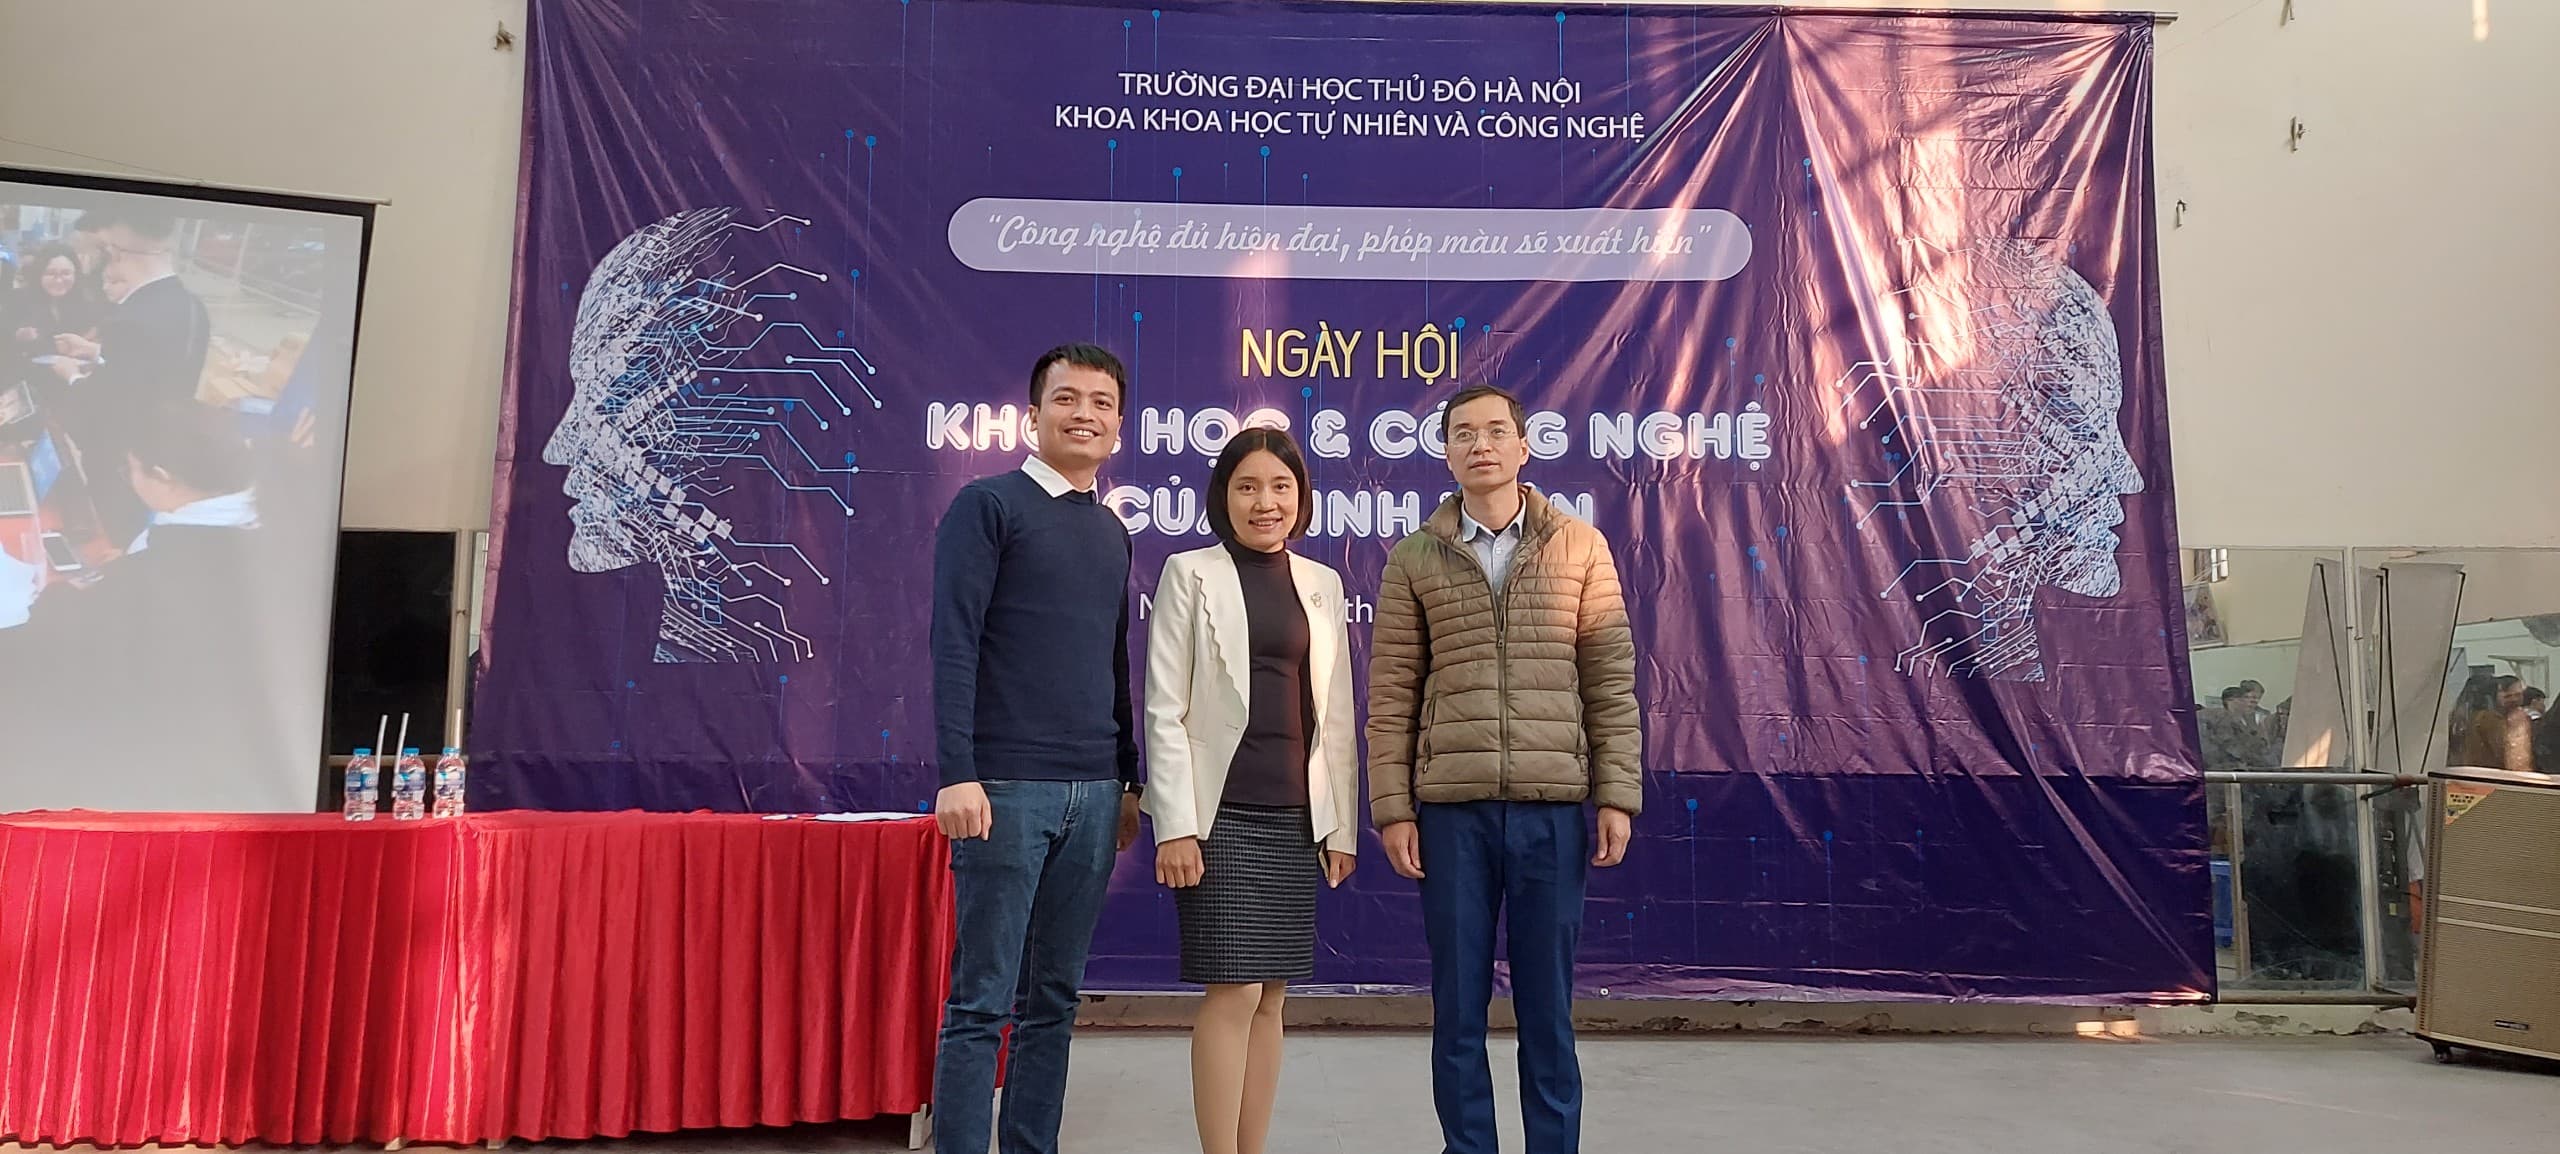 NIIT-ICT Hà Nội đồng hành với phong trào sinh viên nghiên cứu khoa học trường Đại học Thủ Đô Hà Nội